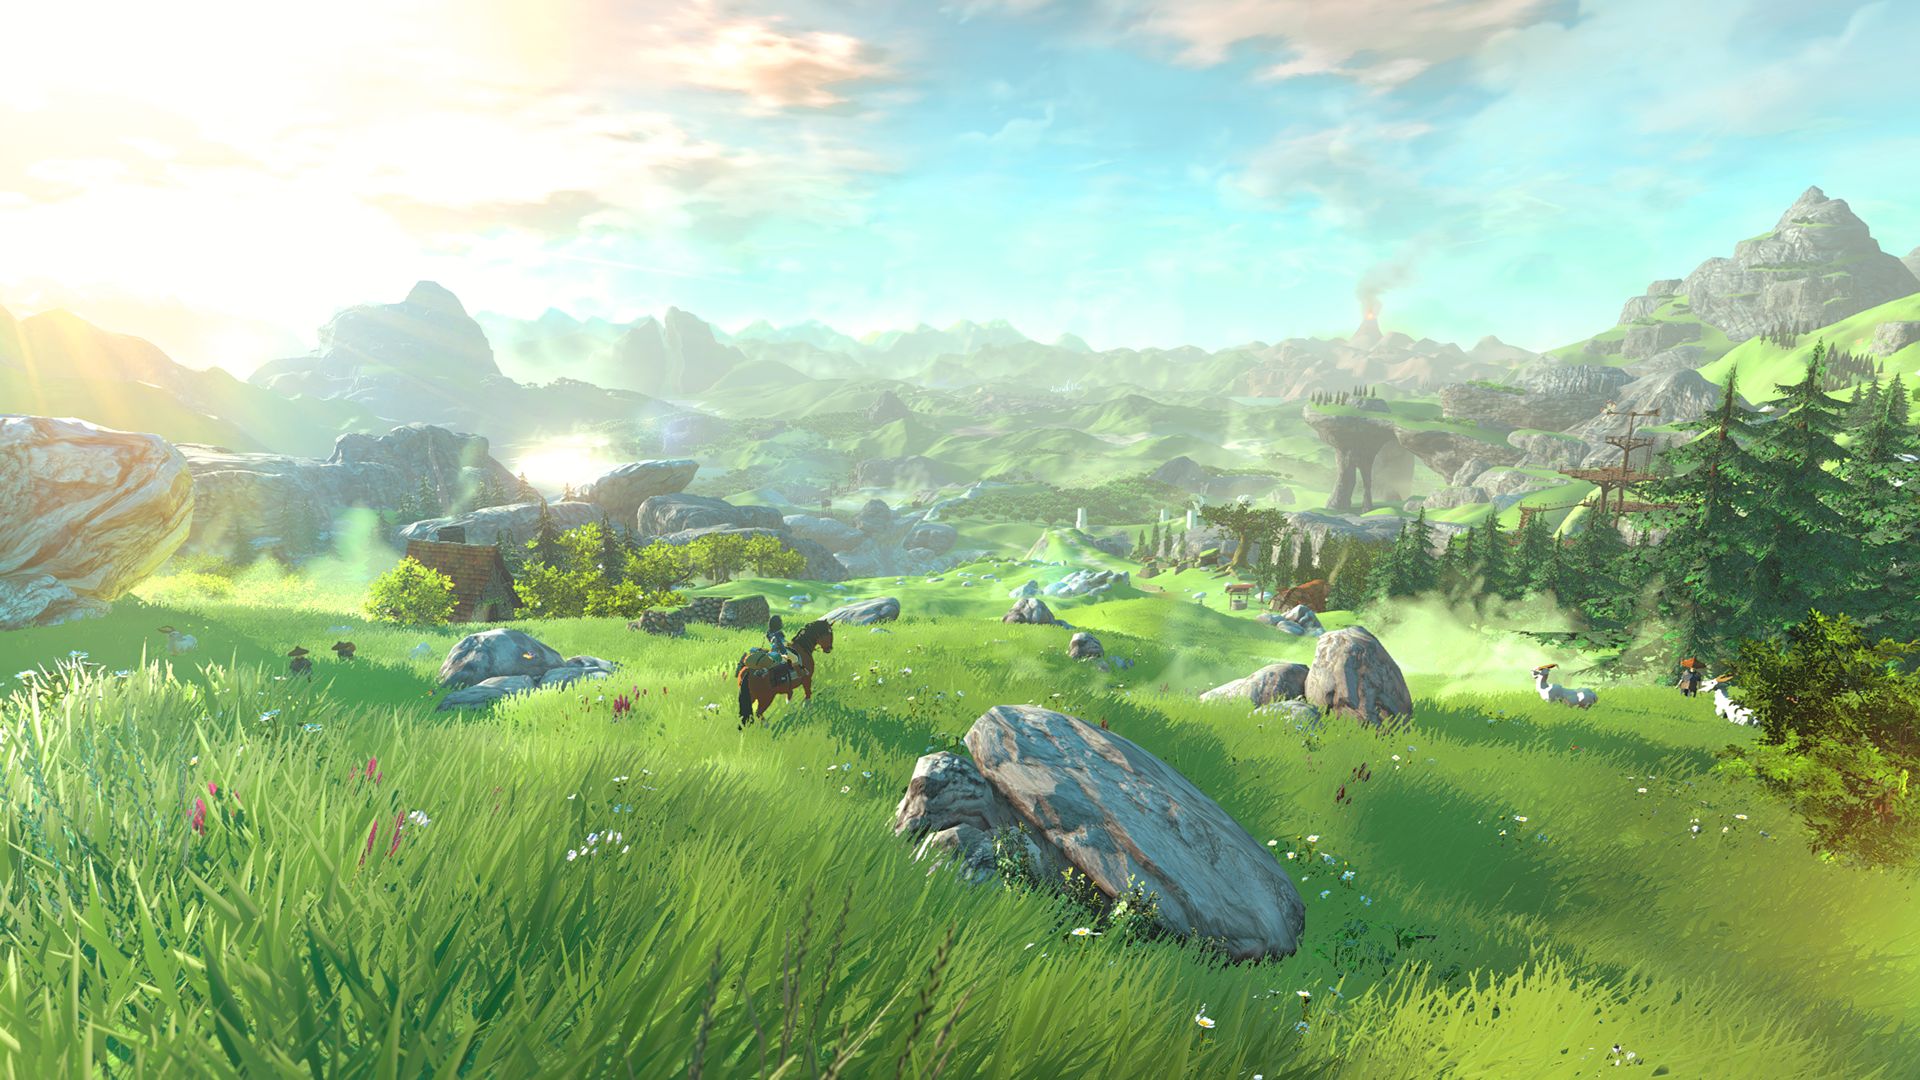 High Quality Zelda Wii U Hyrule Field Blank Meme Template